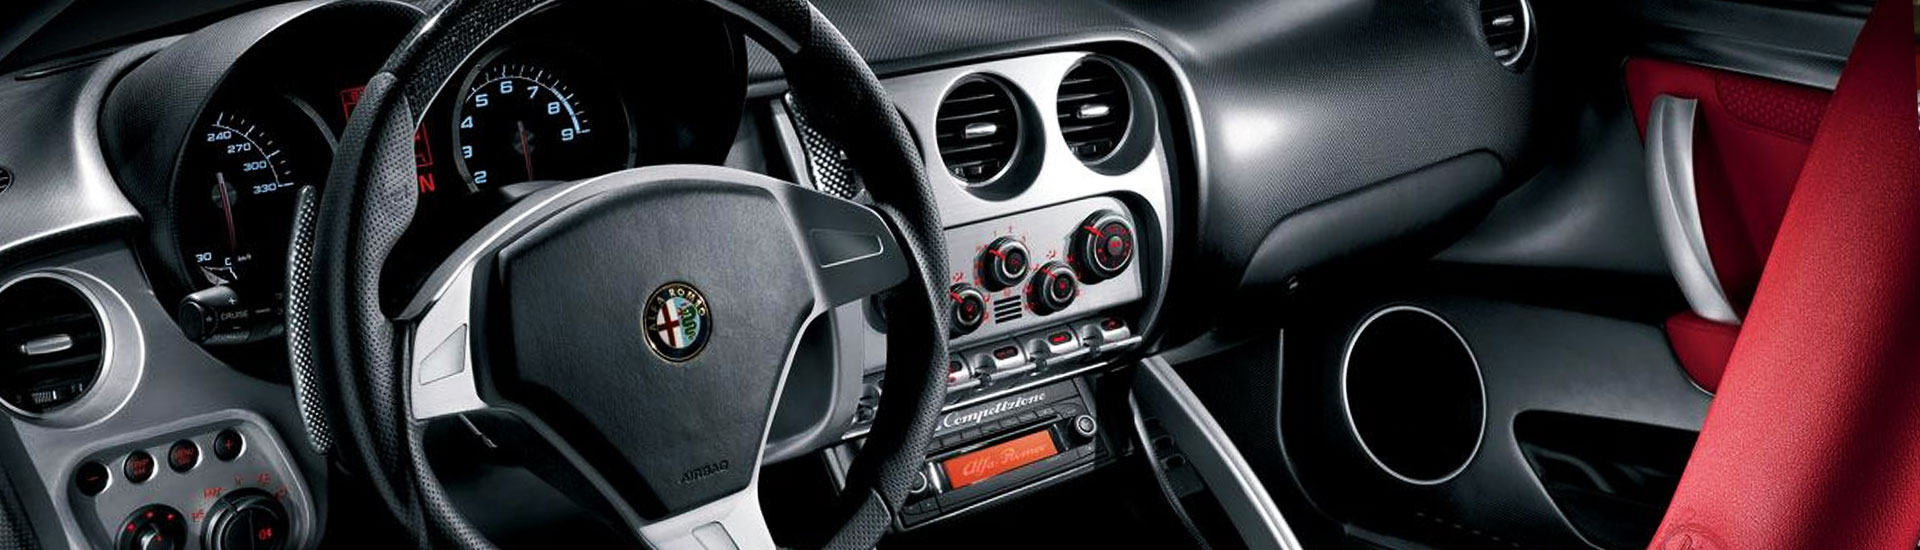 Alfa Romeo Dash Kits